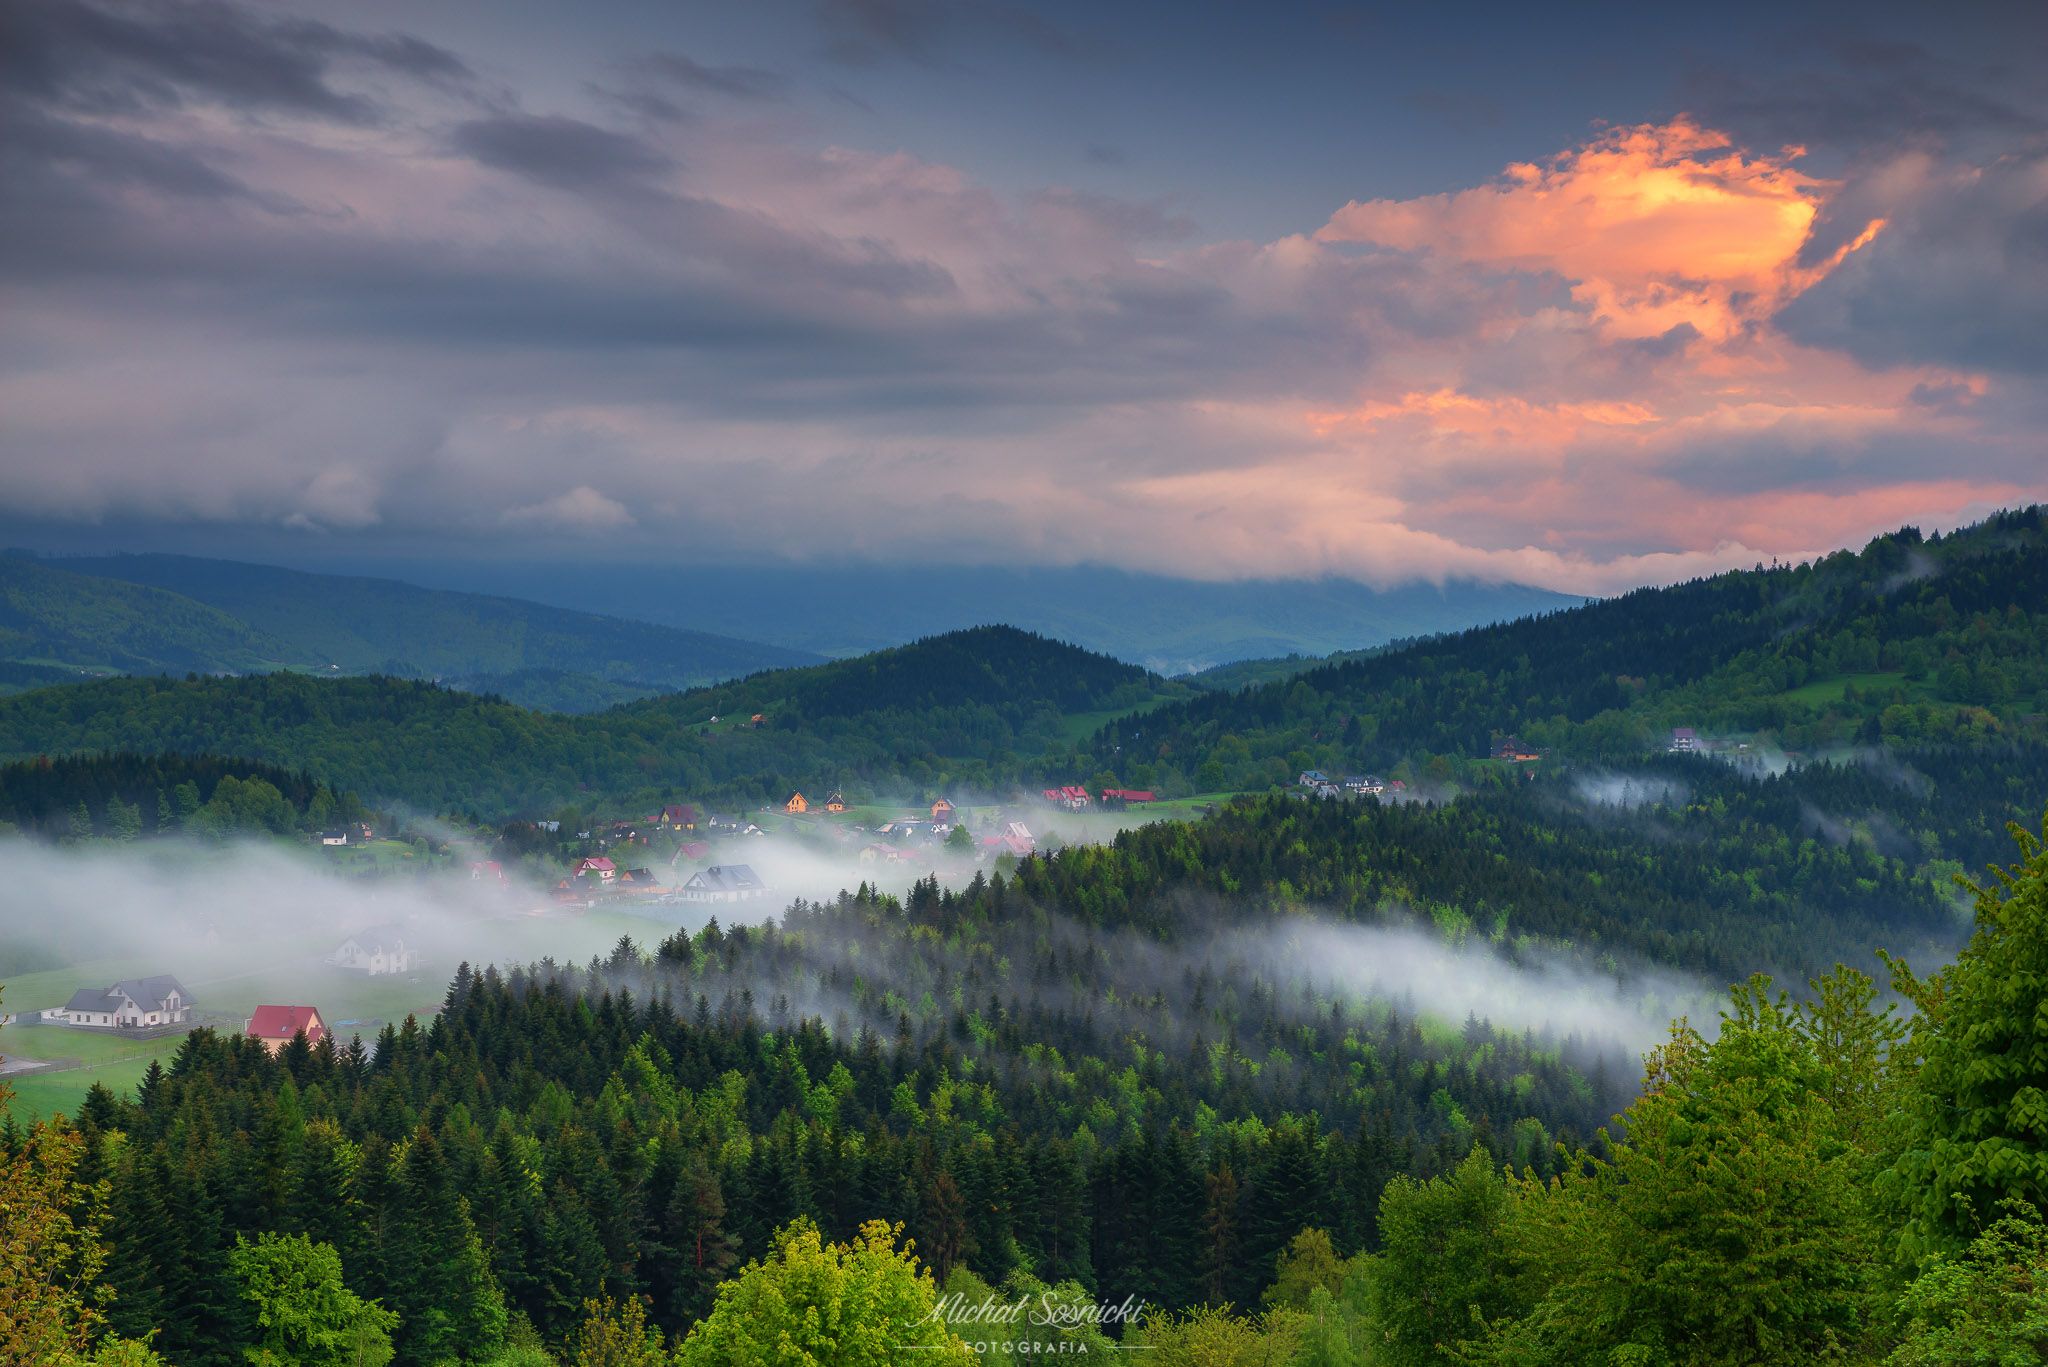 #poland #zawoja #foggy #clouds #sky #rain #sunset, Michał Sośnicki